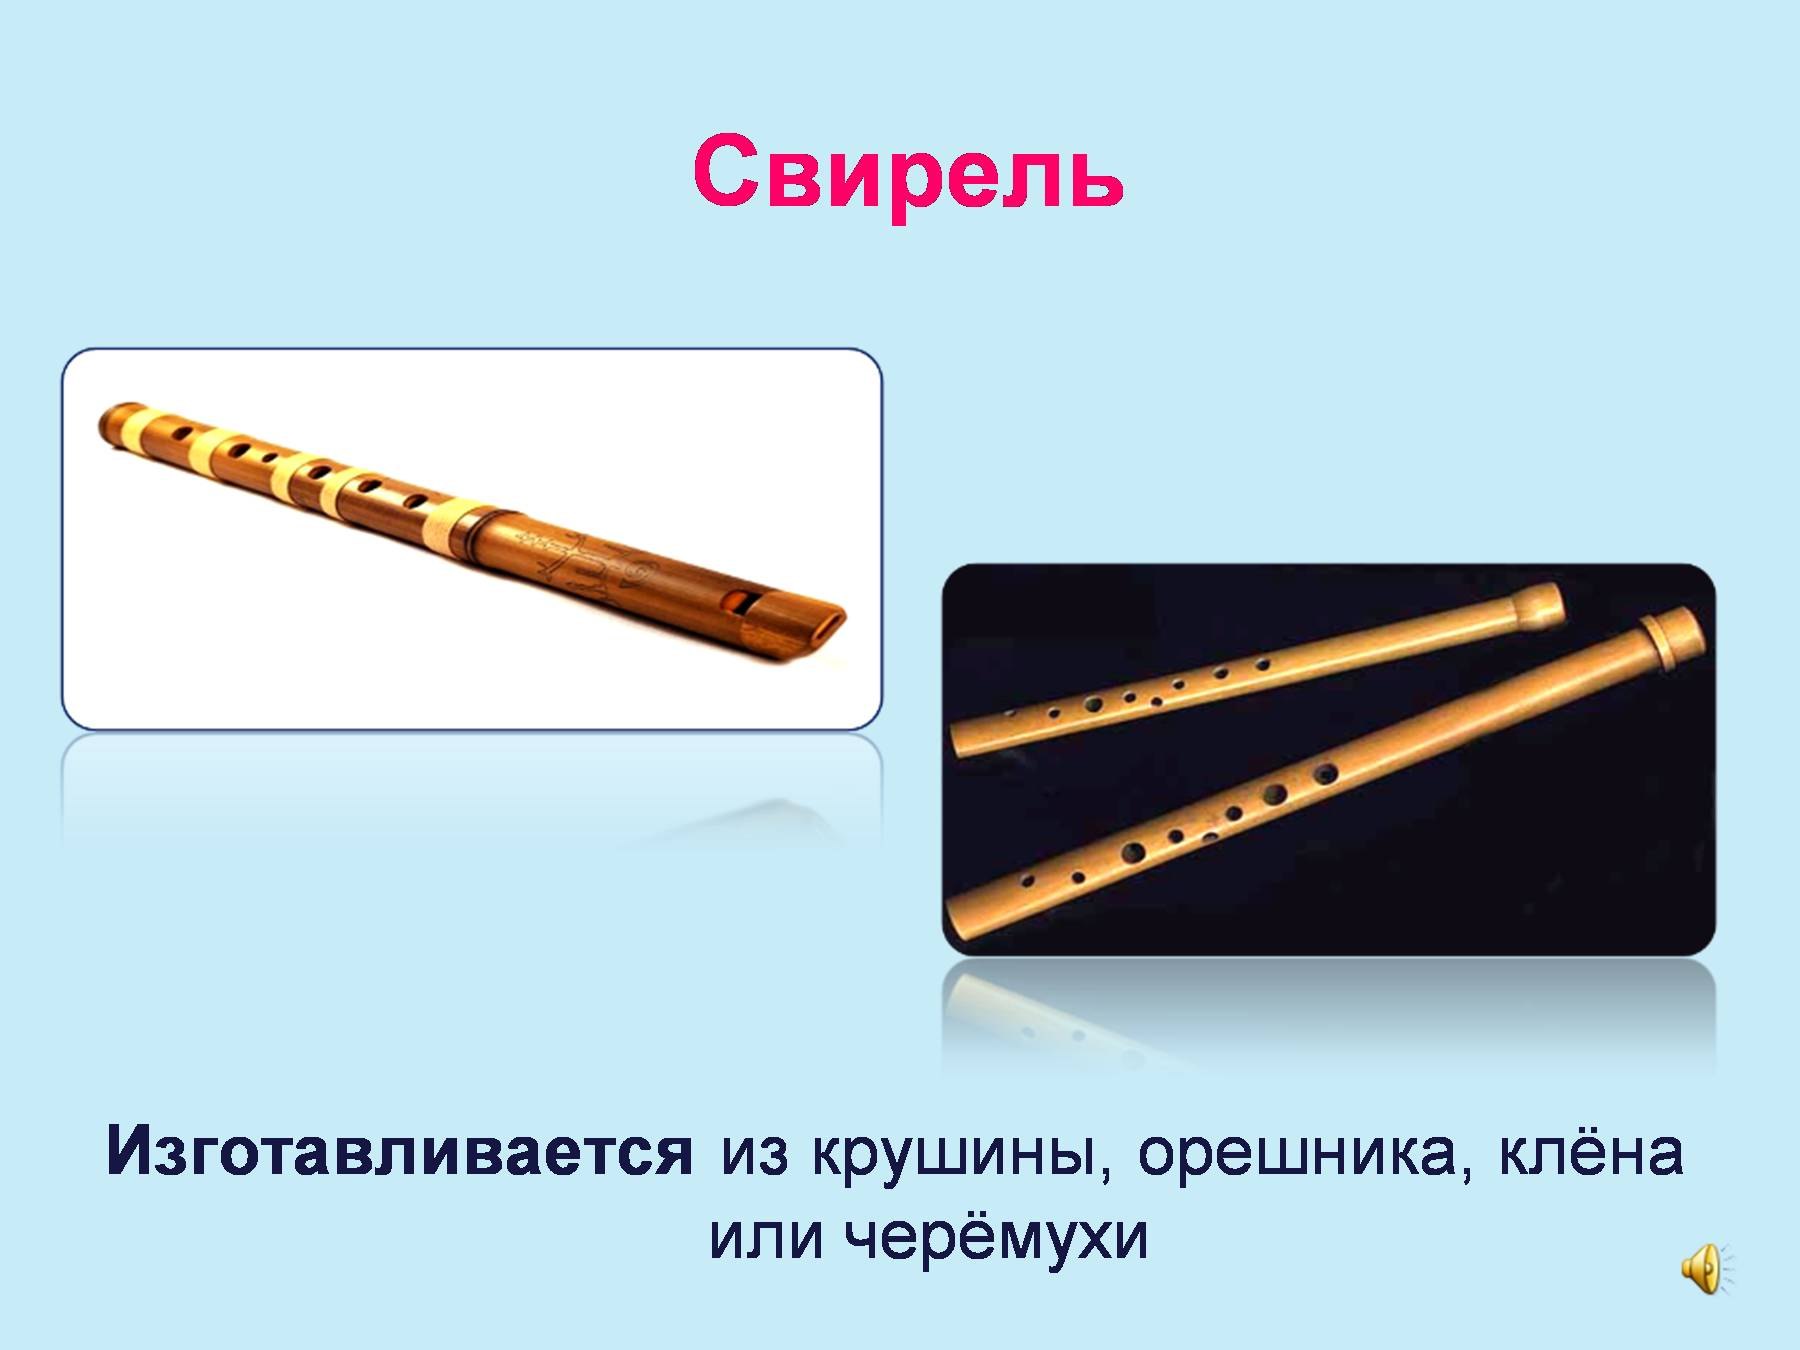 Русский народный инструмент Свирель презентация